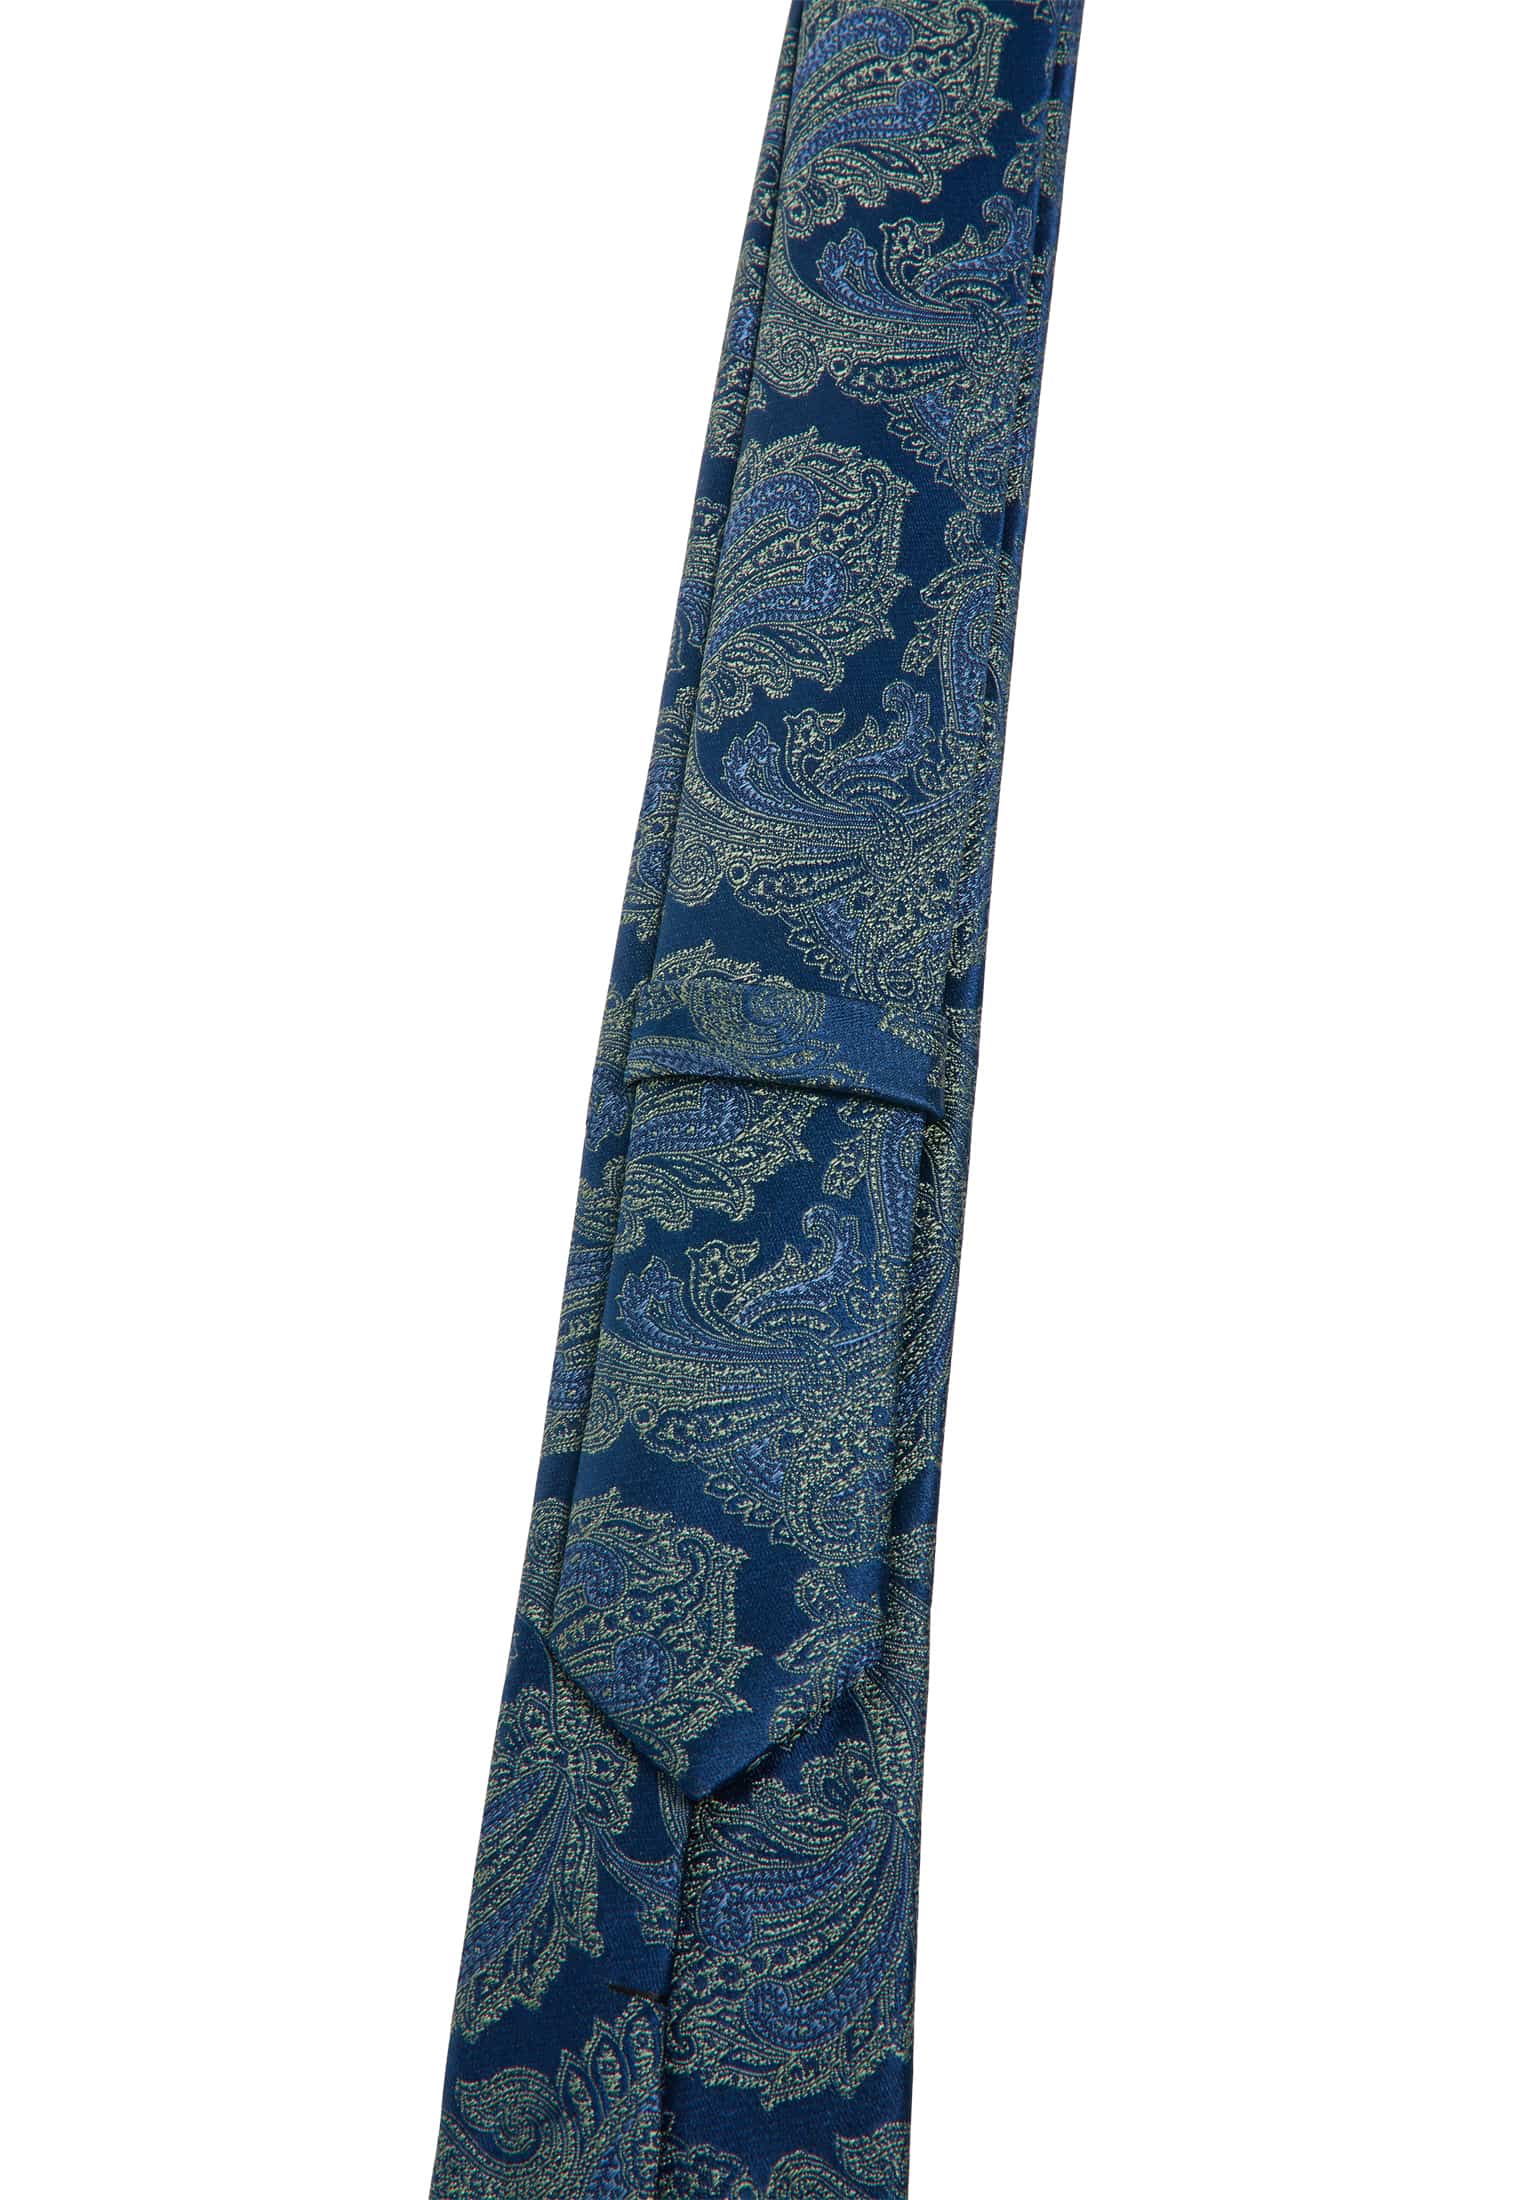 Cravate bleu/vert estampé